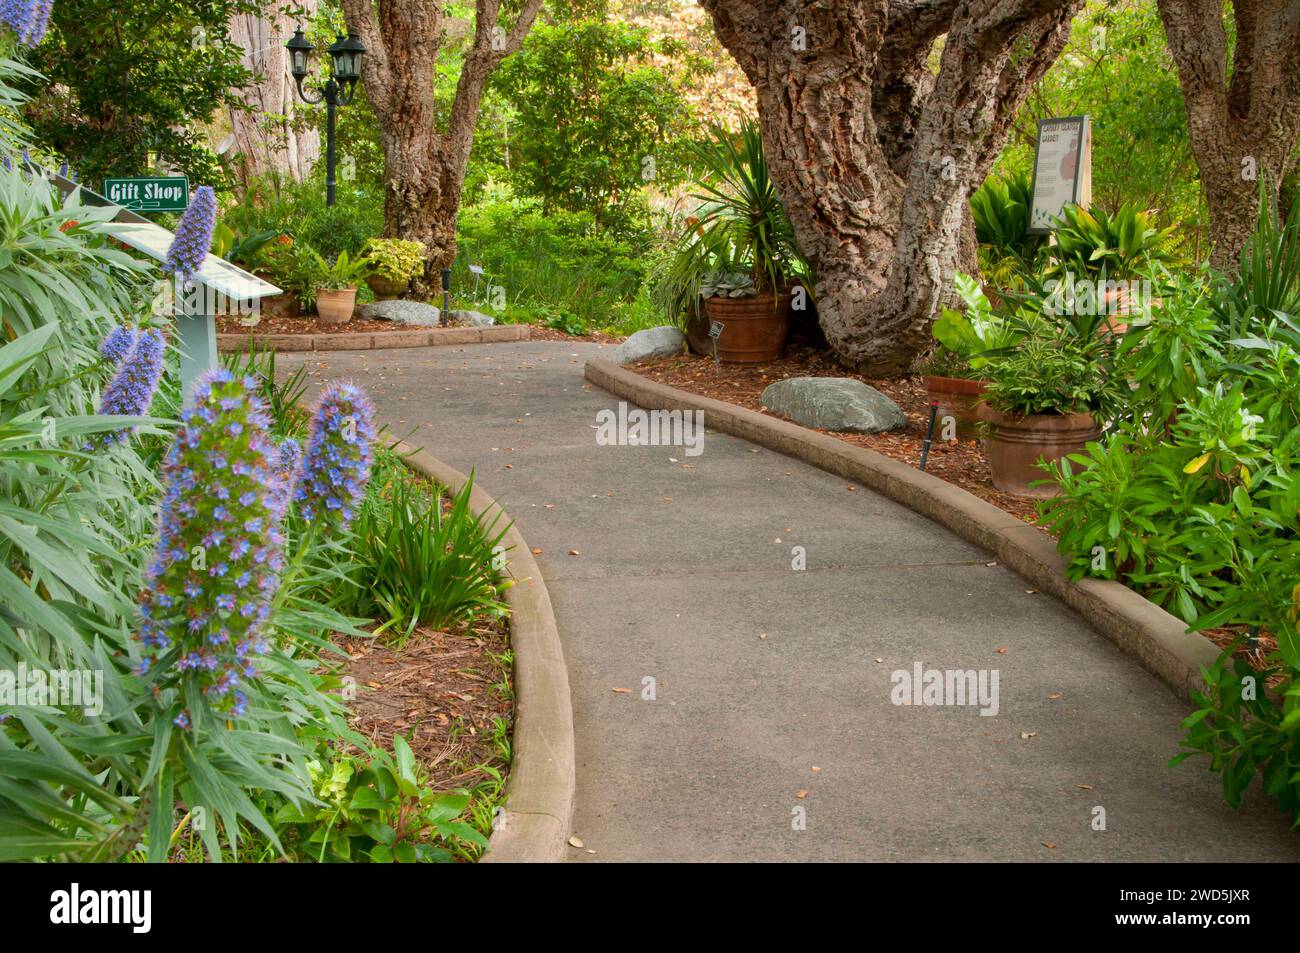 Chemin avec fierté de Madère (Echium candicans ou rose) et de chêne-liège, le Jardin botanique de San Diego, Encinitas, en Californie Banque D'Images